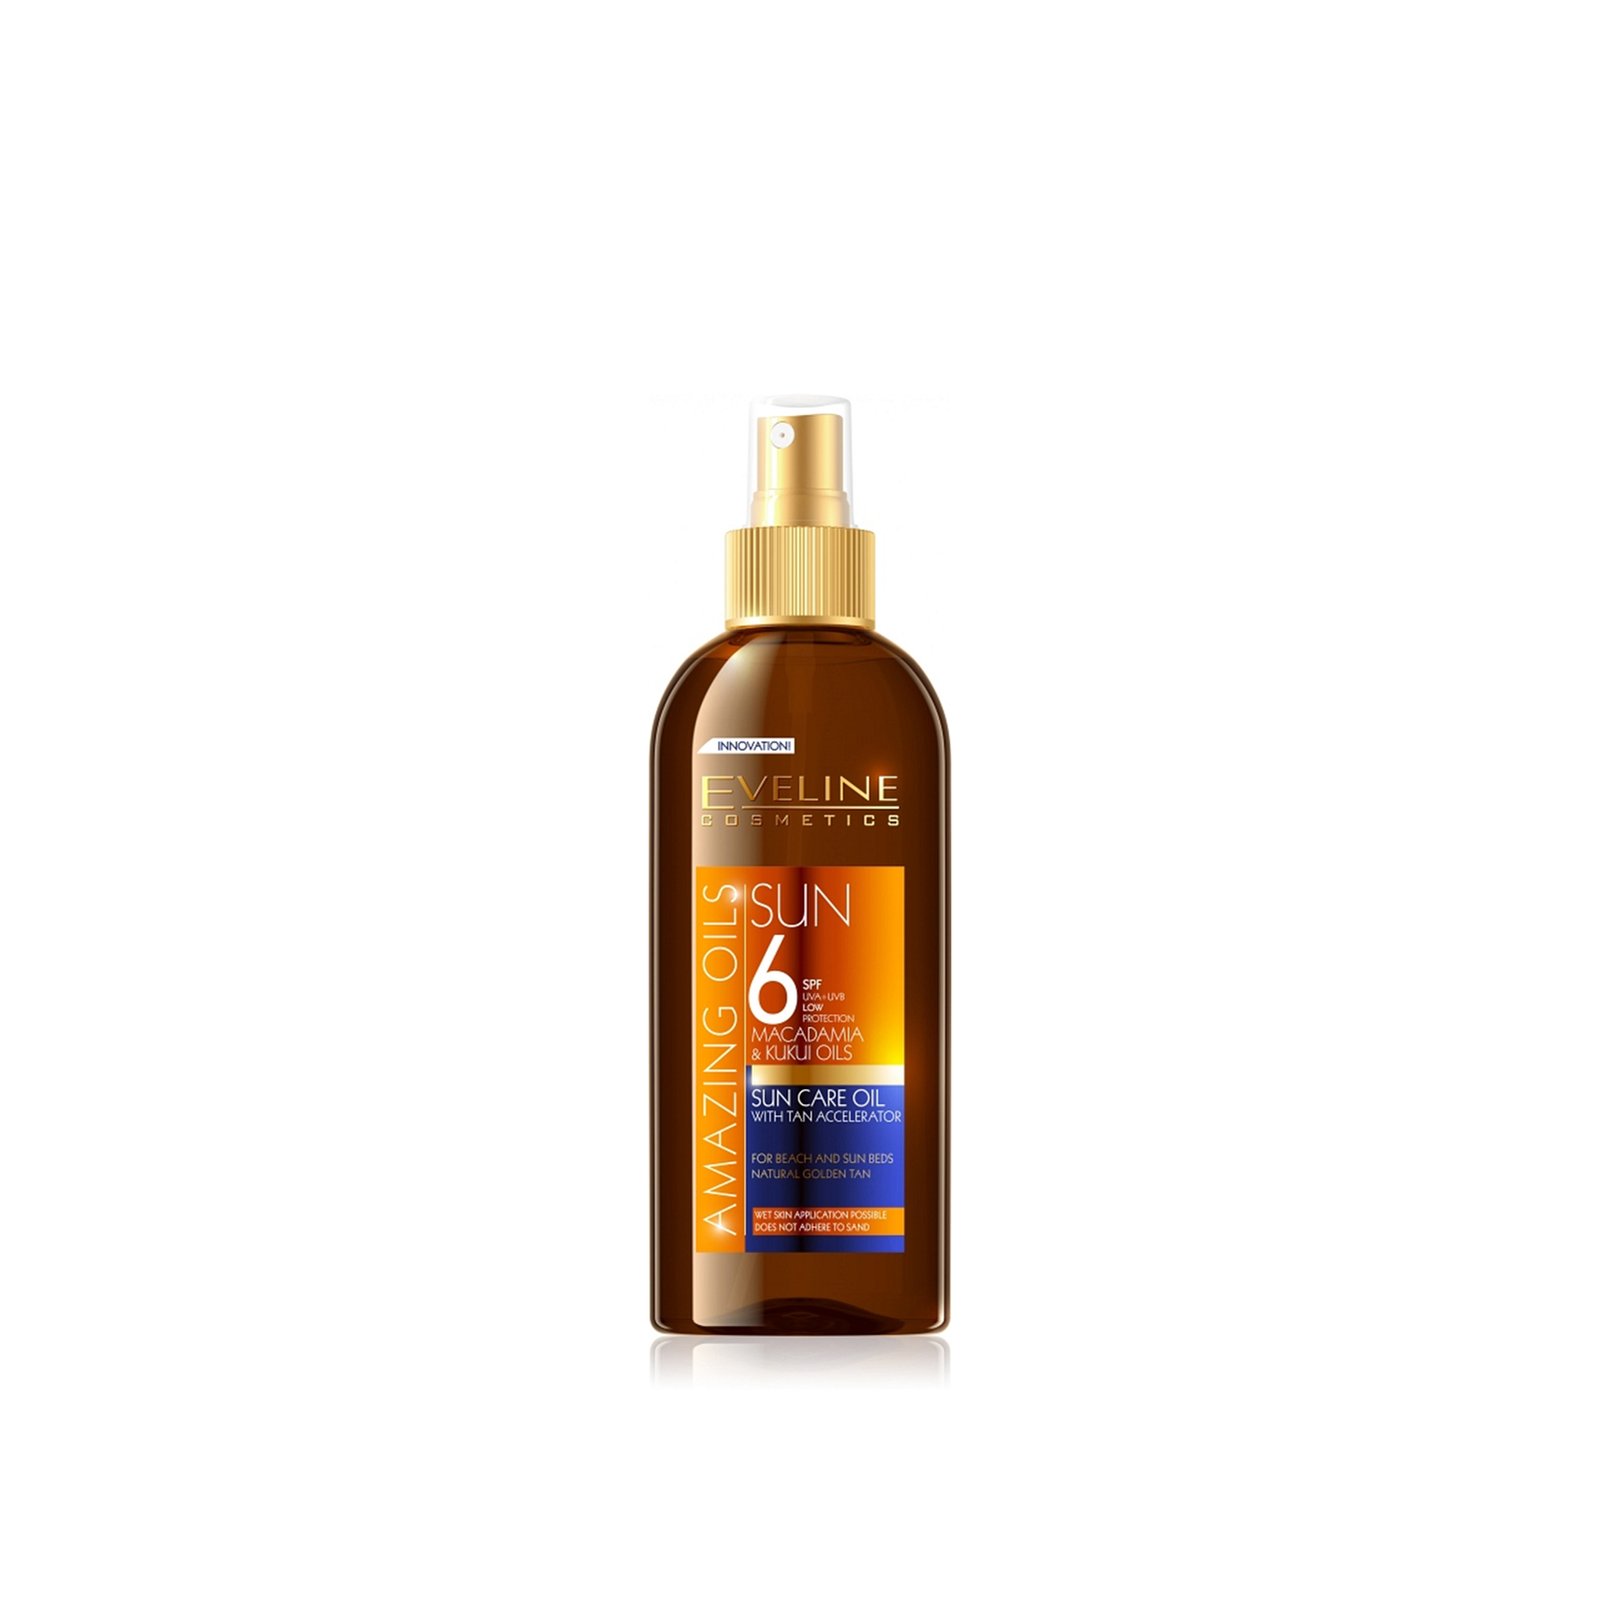 Eveline Cosmetics Amazing Oils Sun Care Oil With Tan Accelerator SPF6 150ml (5.28floz)